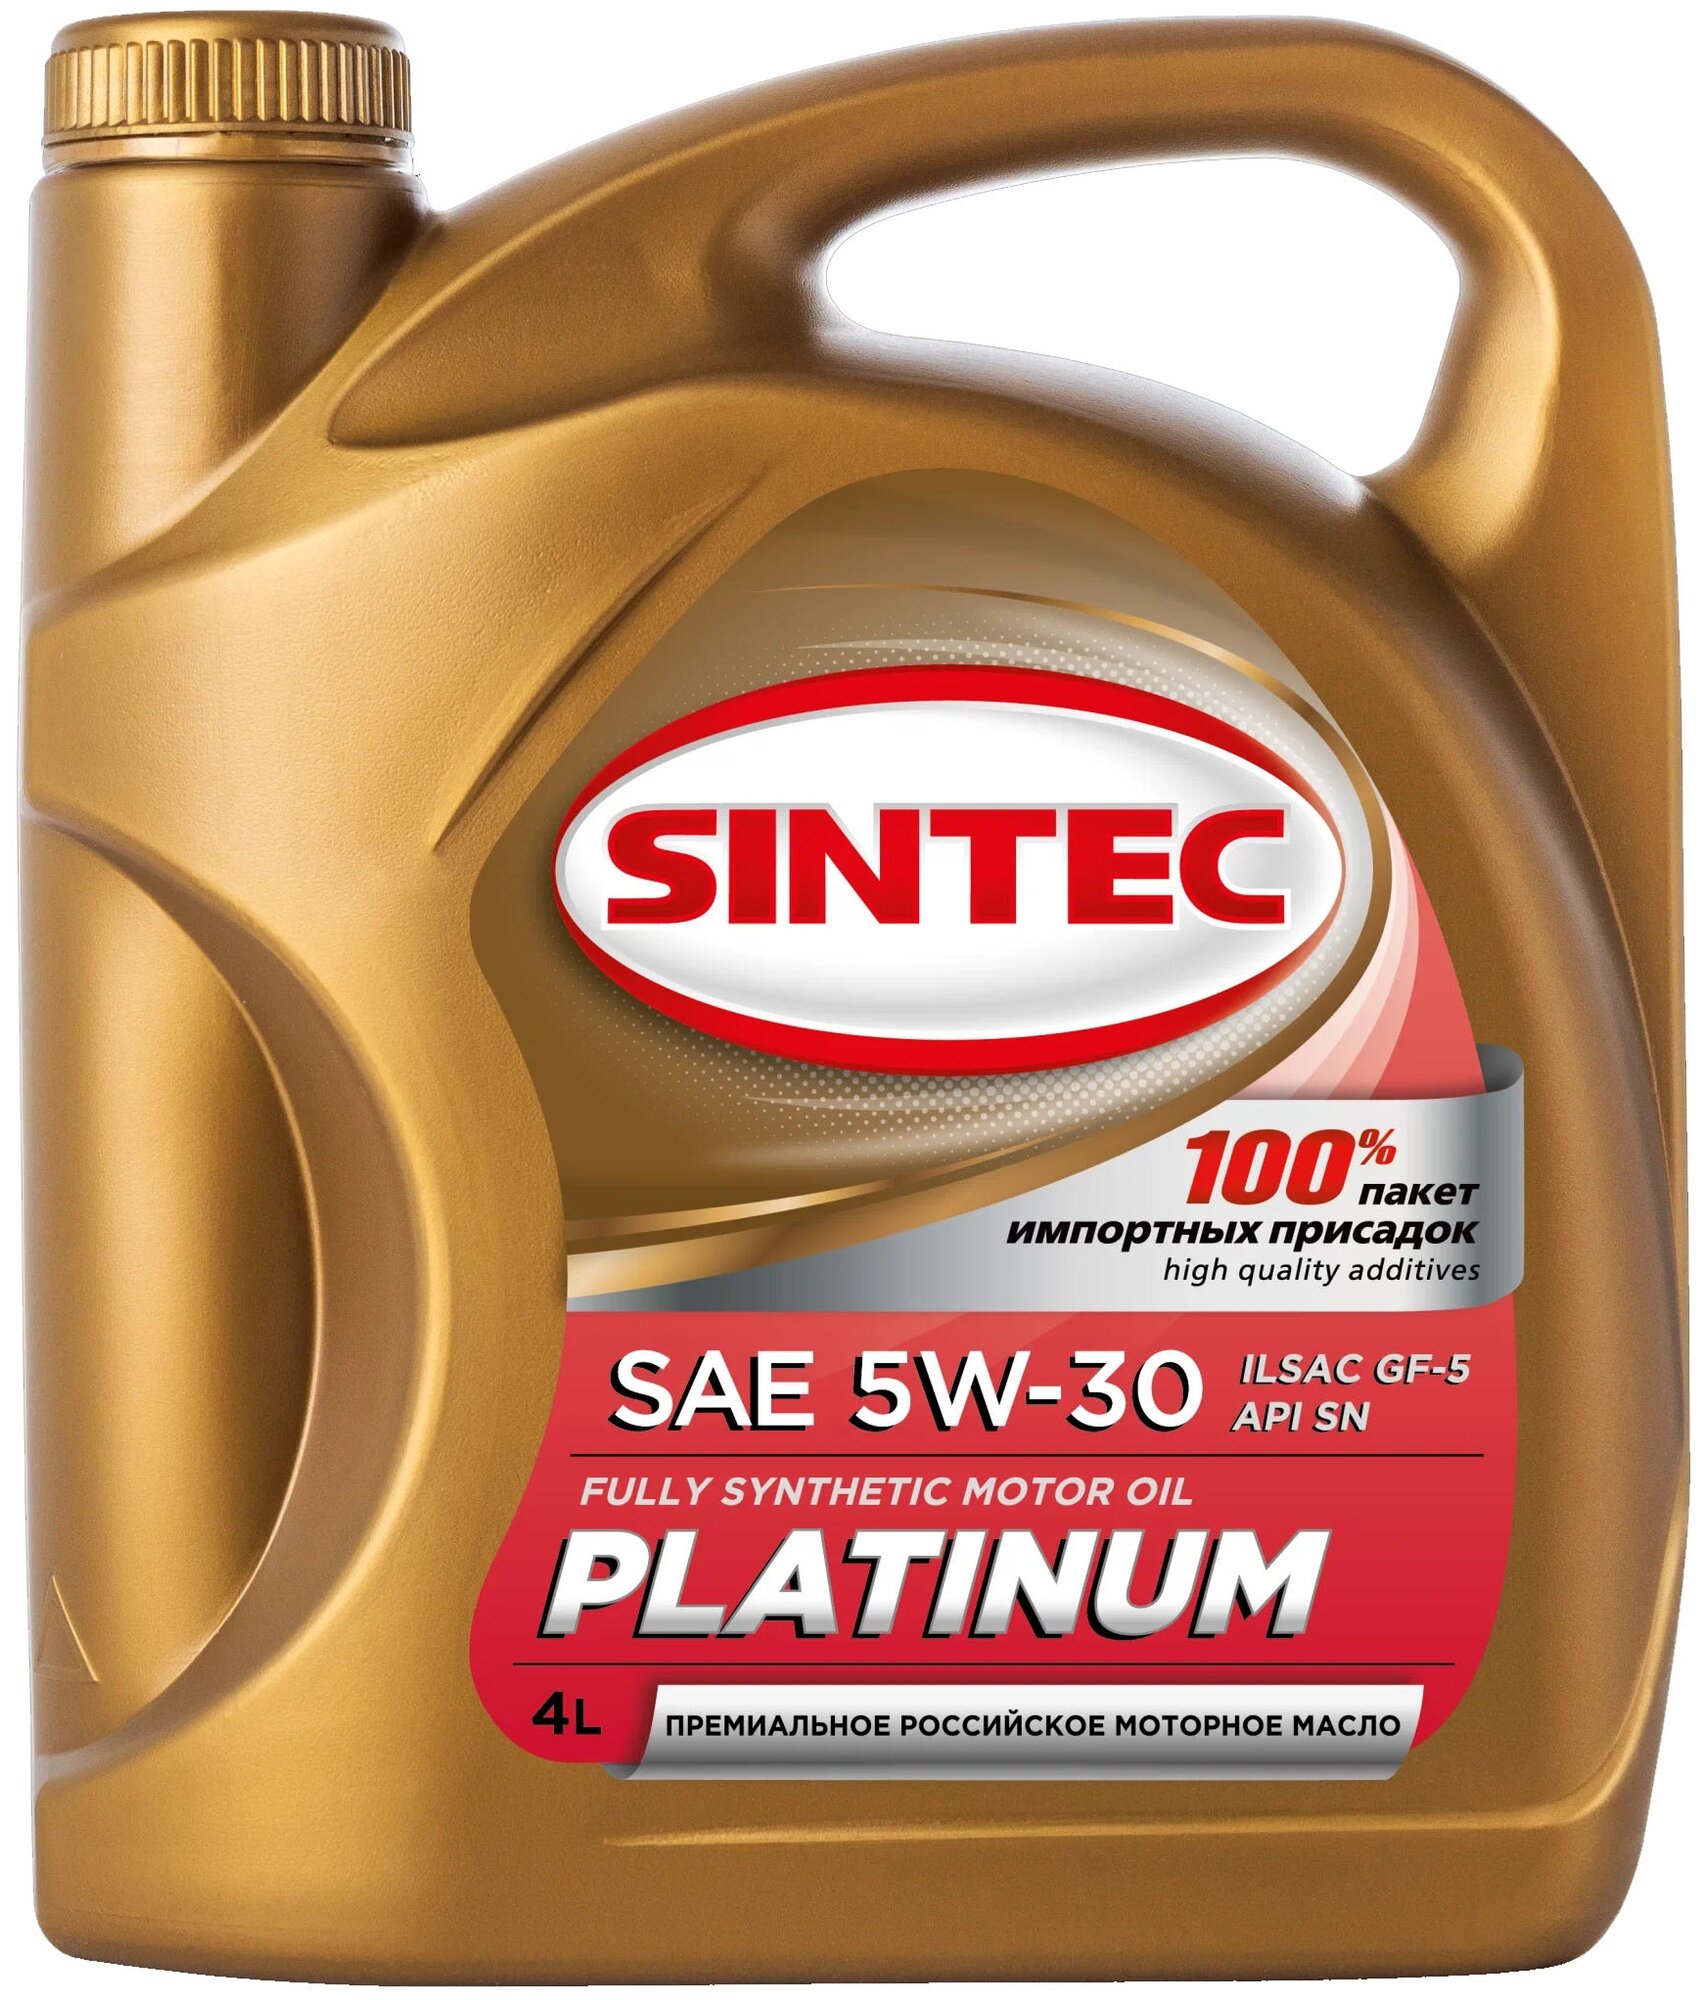 Синтетическое моторное масло SINTEC Platinum SAE 5W-30 ILSAC GF-5 API SN, 4 л, 4 л1 шт